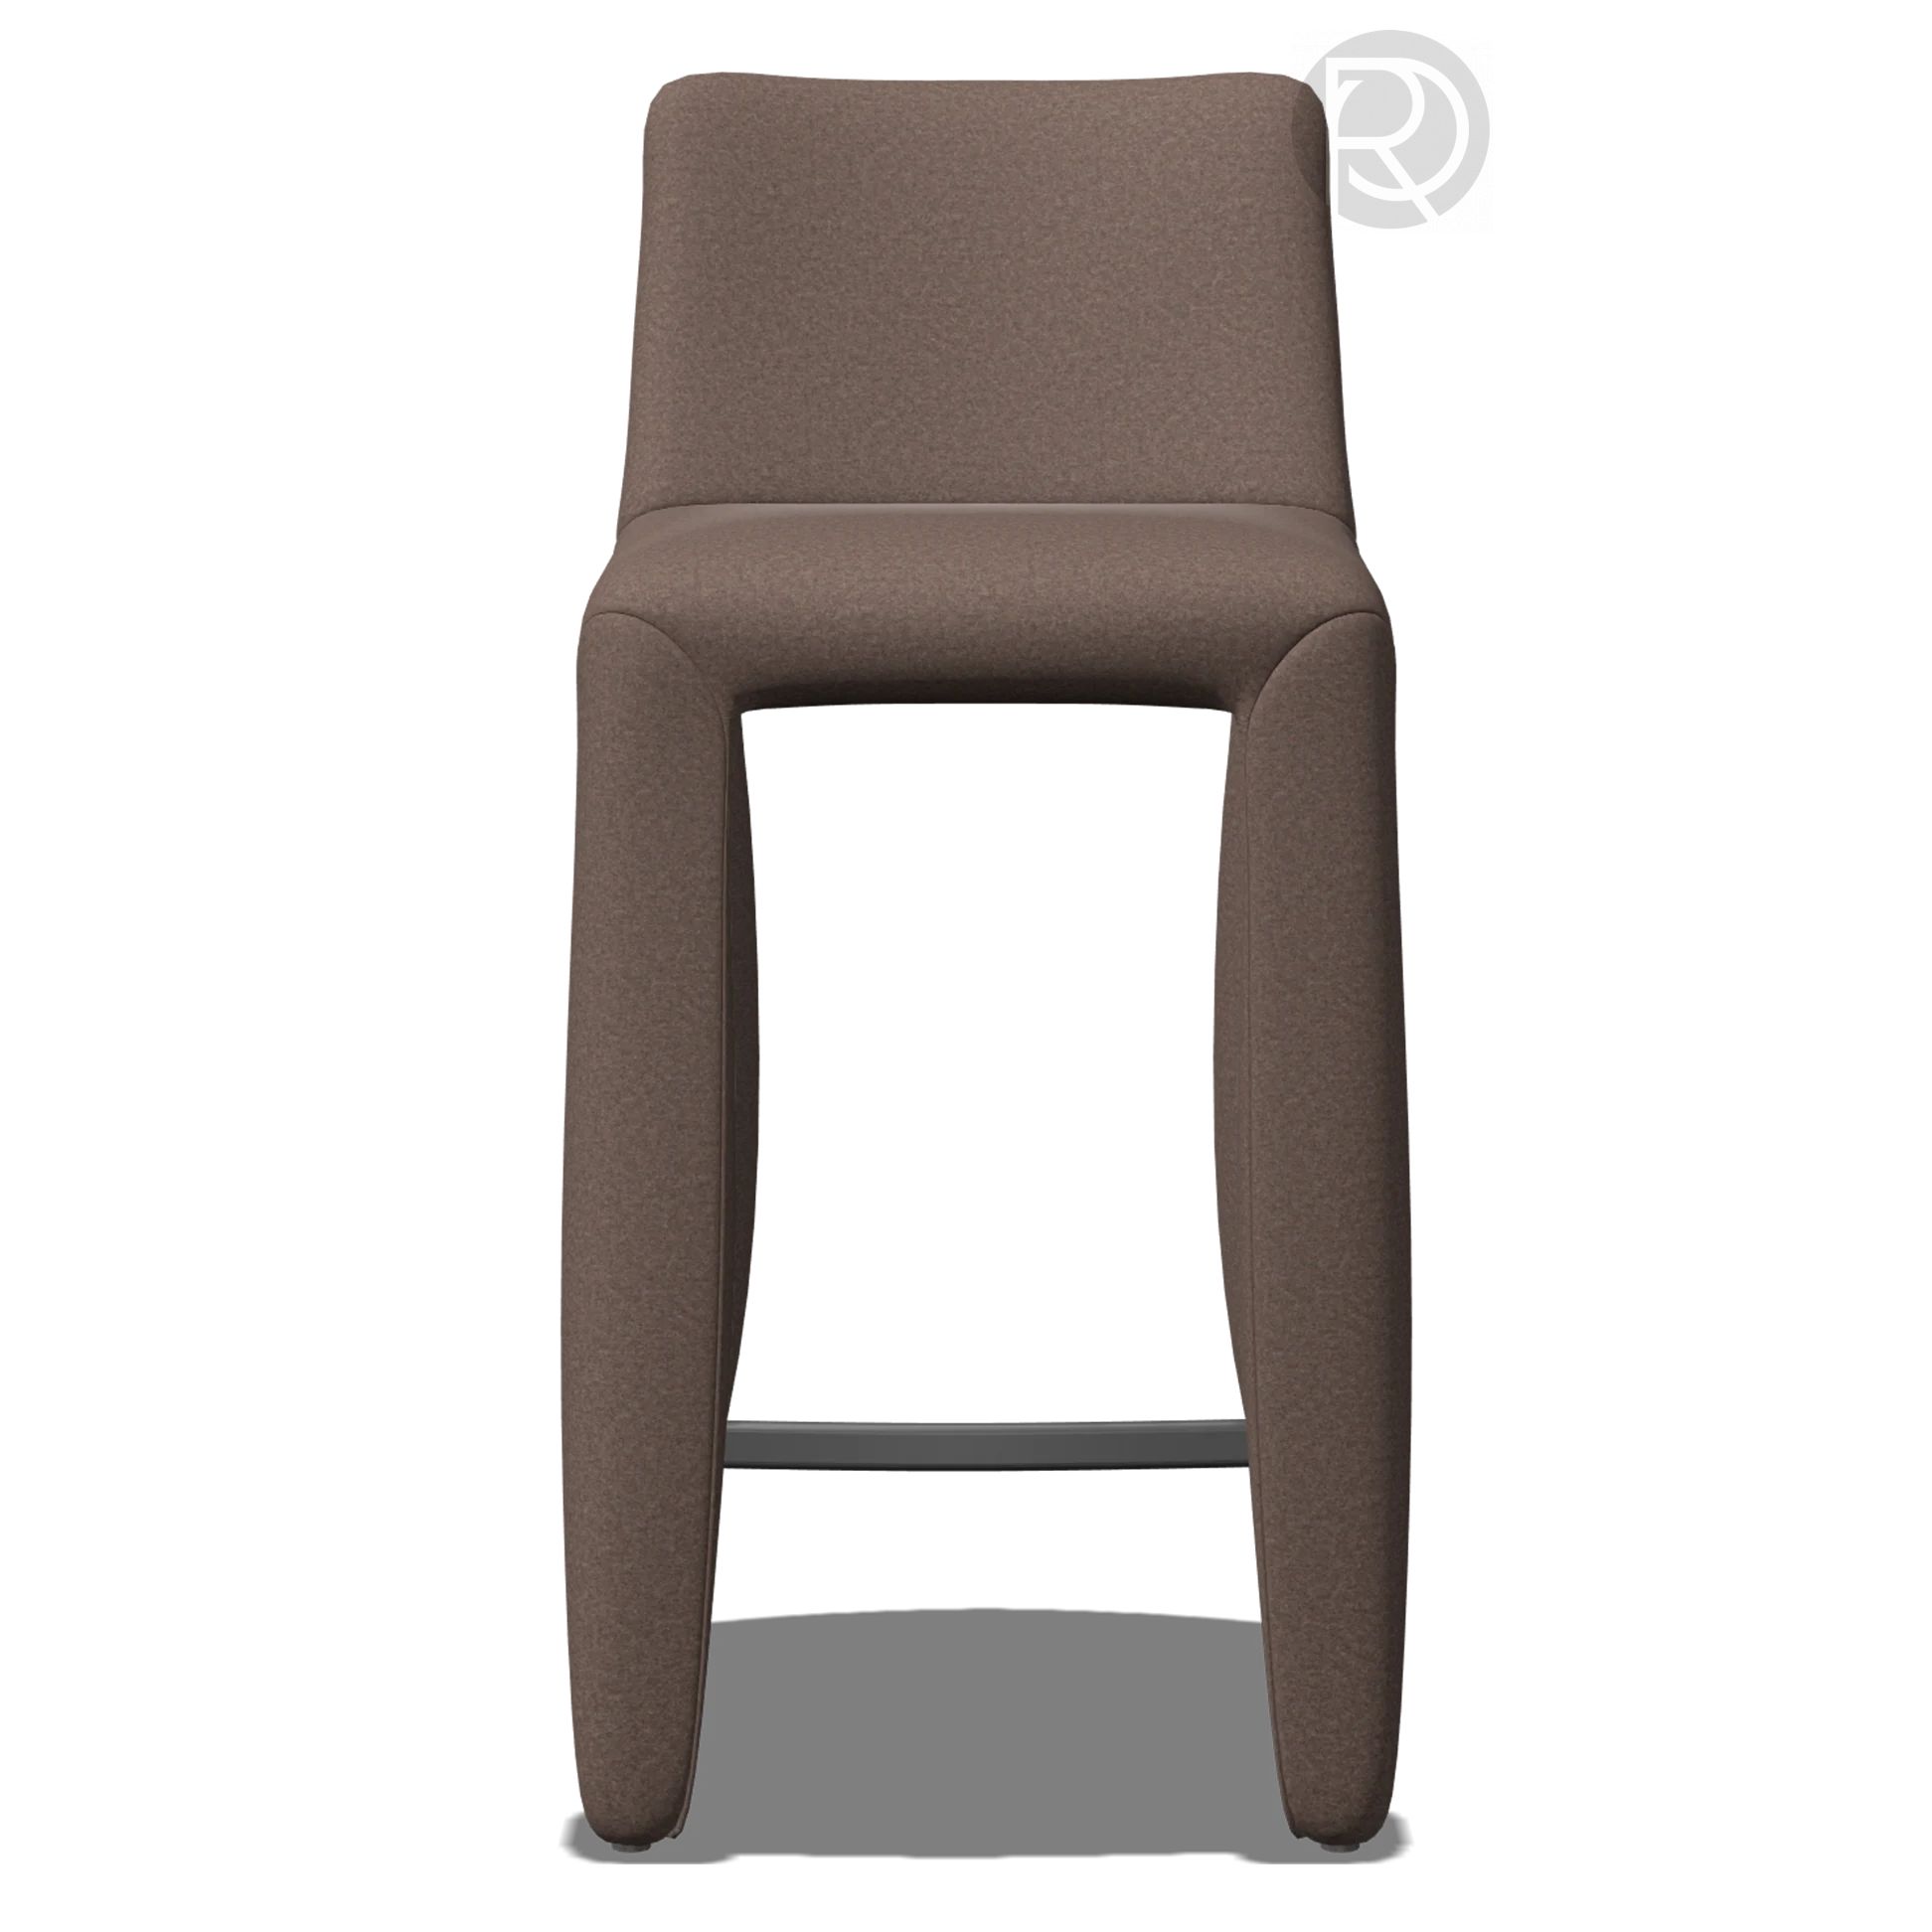 MONSTER Bar stool by Moooi